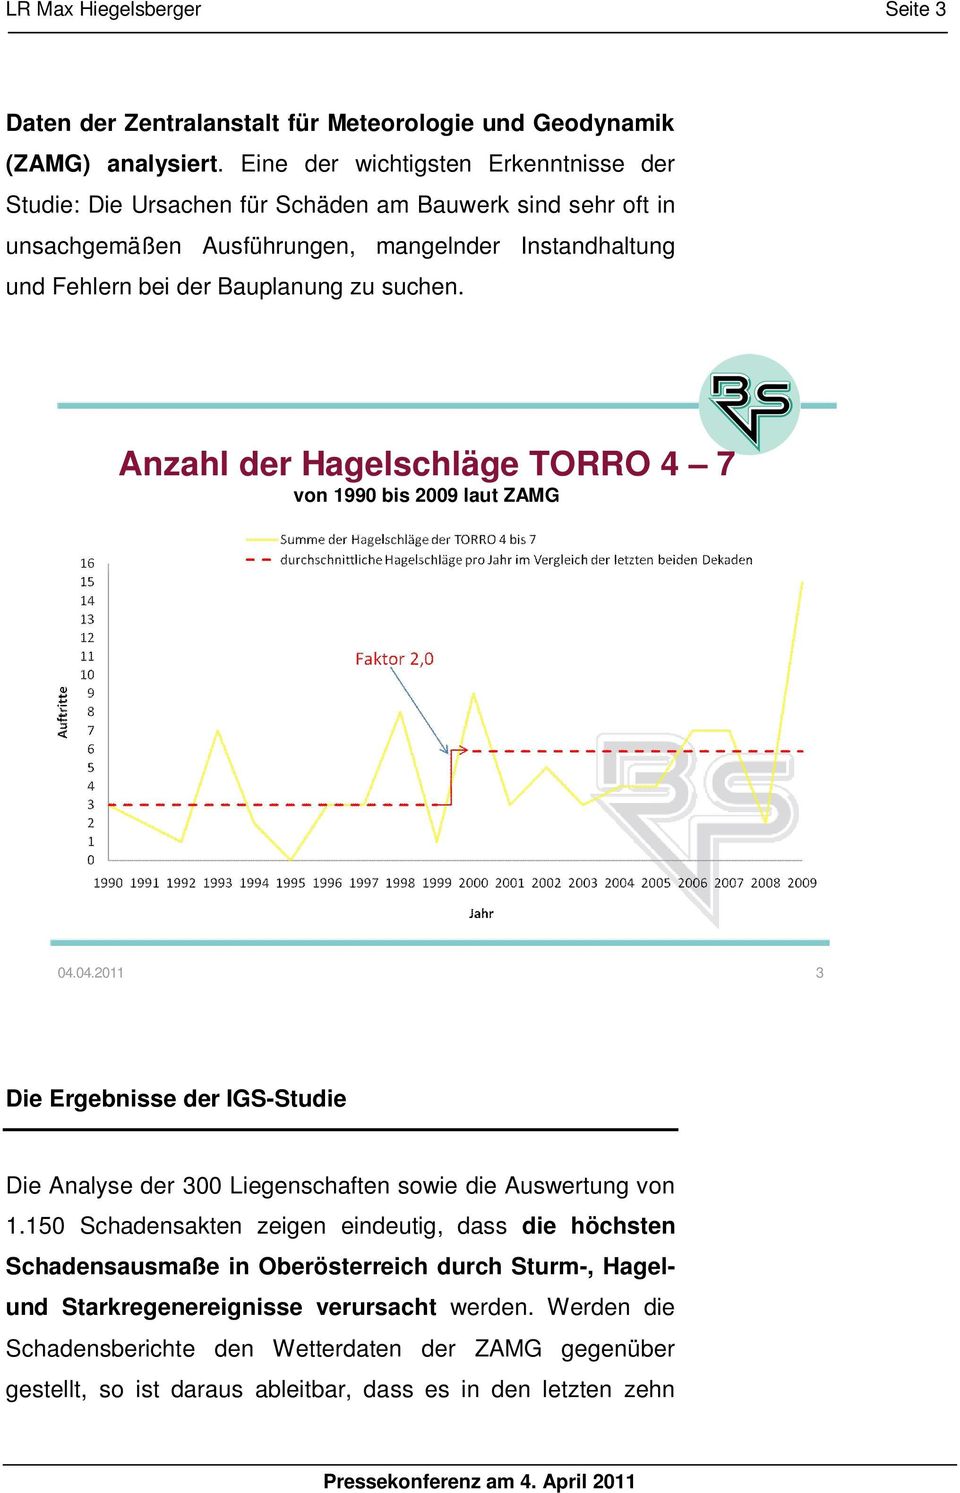 zu suchen. Anzahl der Hagelschläge TORRO 4 7 von 1990 bis 2009 laut ZAMG 04.04.2011 3 Die Ergebnisse der IGS-Studie Die Analyse der 300 Liegenschaften sowie die Auswertung von 1.